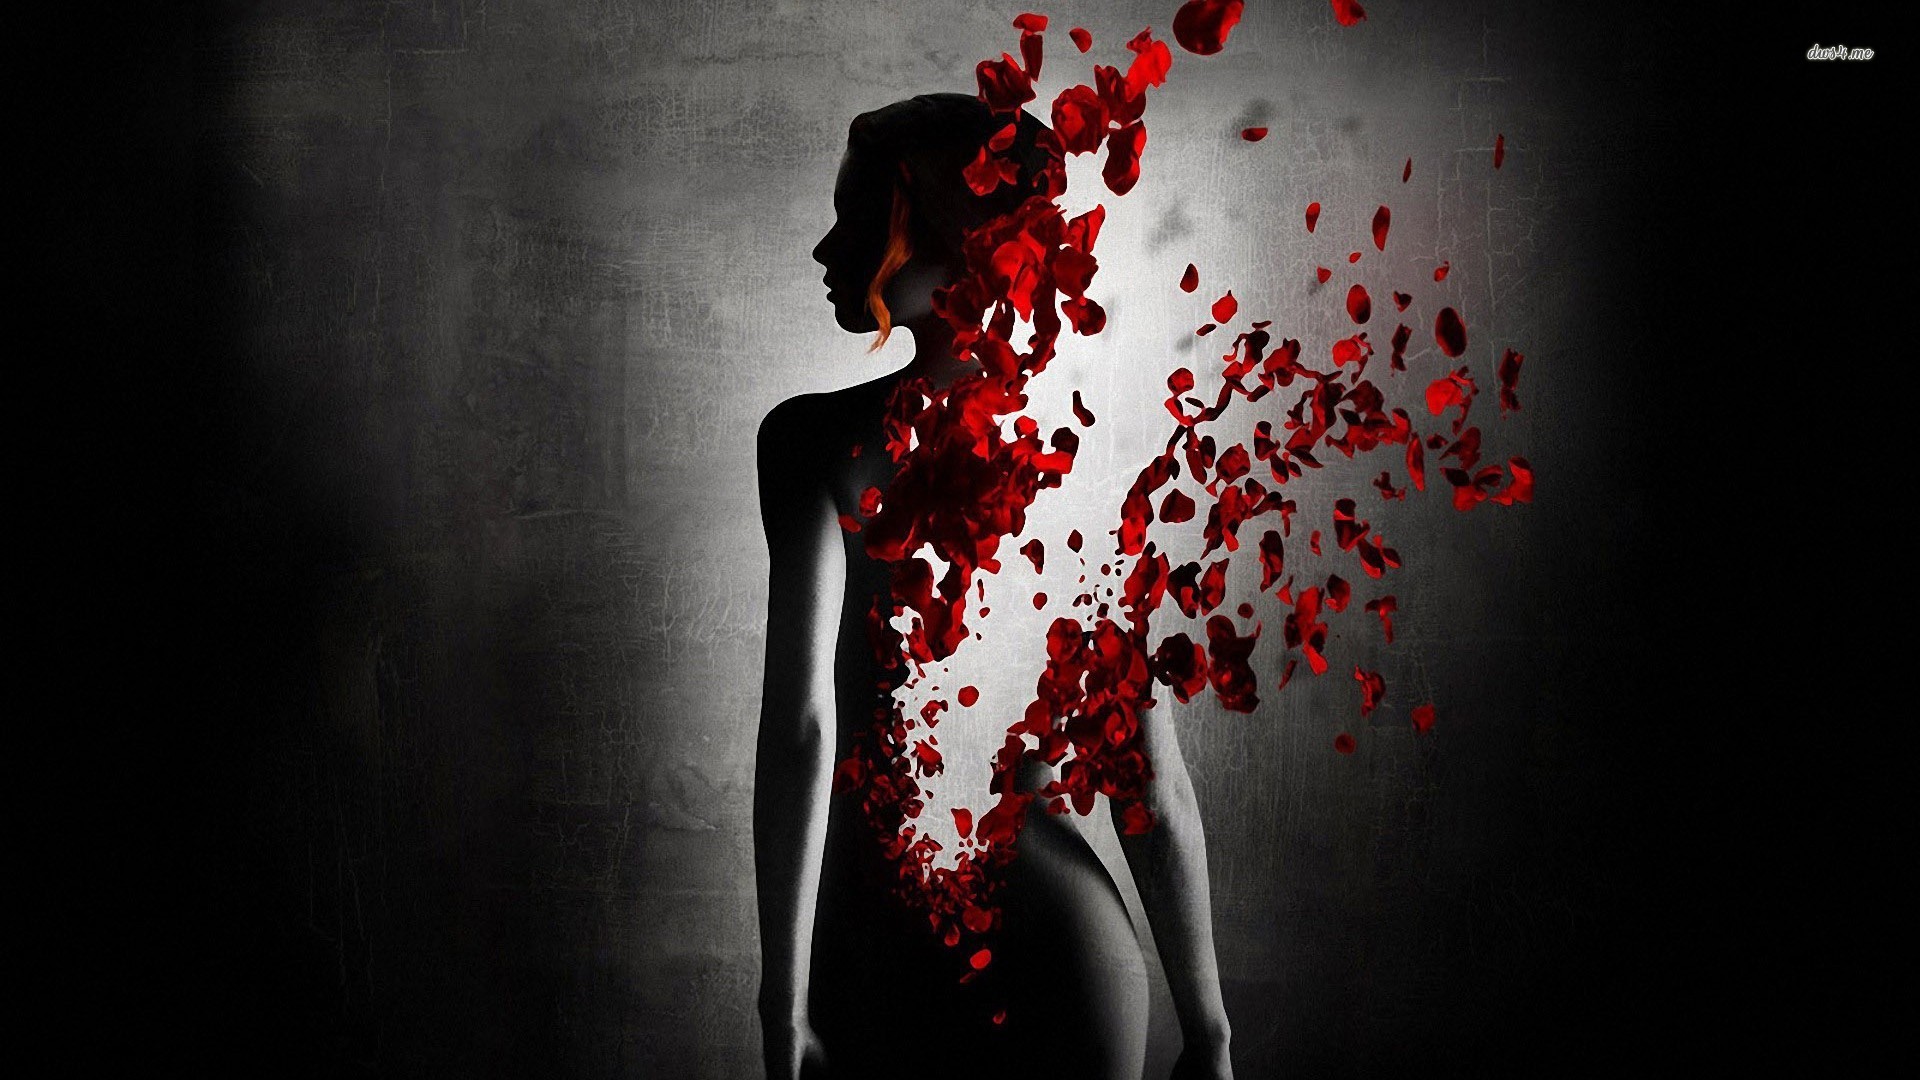 Rose petals and woman silhouette digital art hd wallpaper